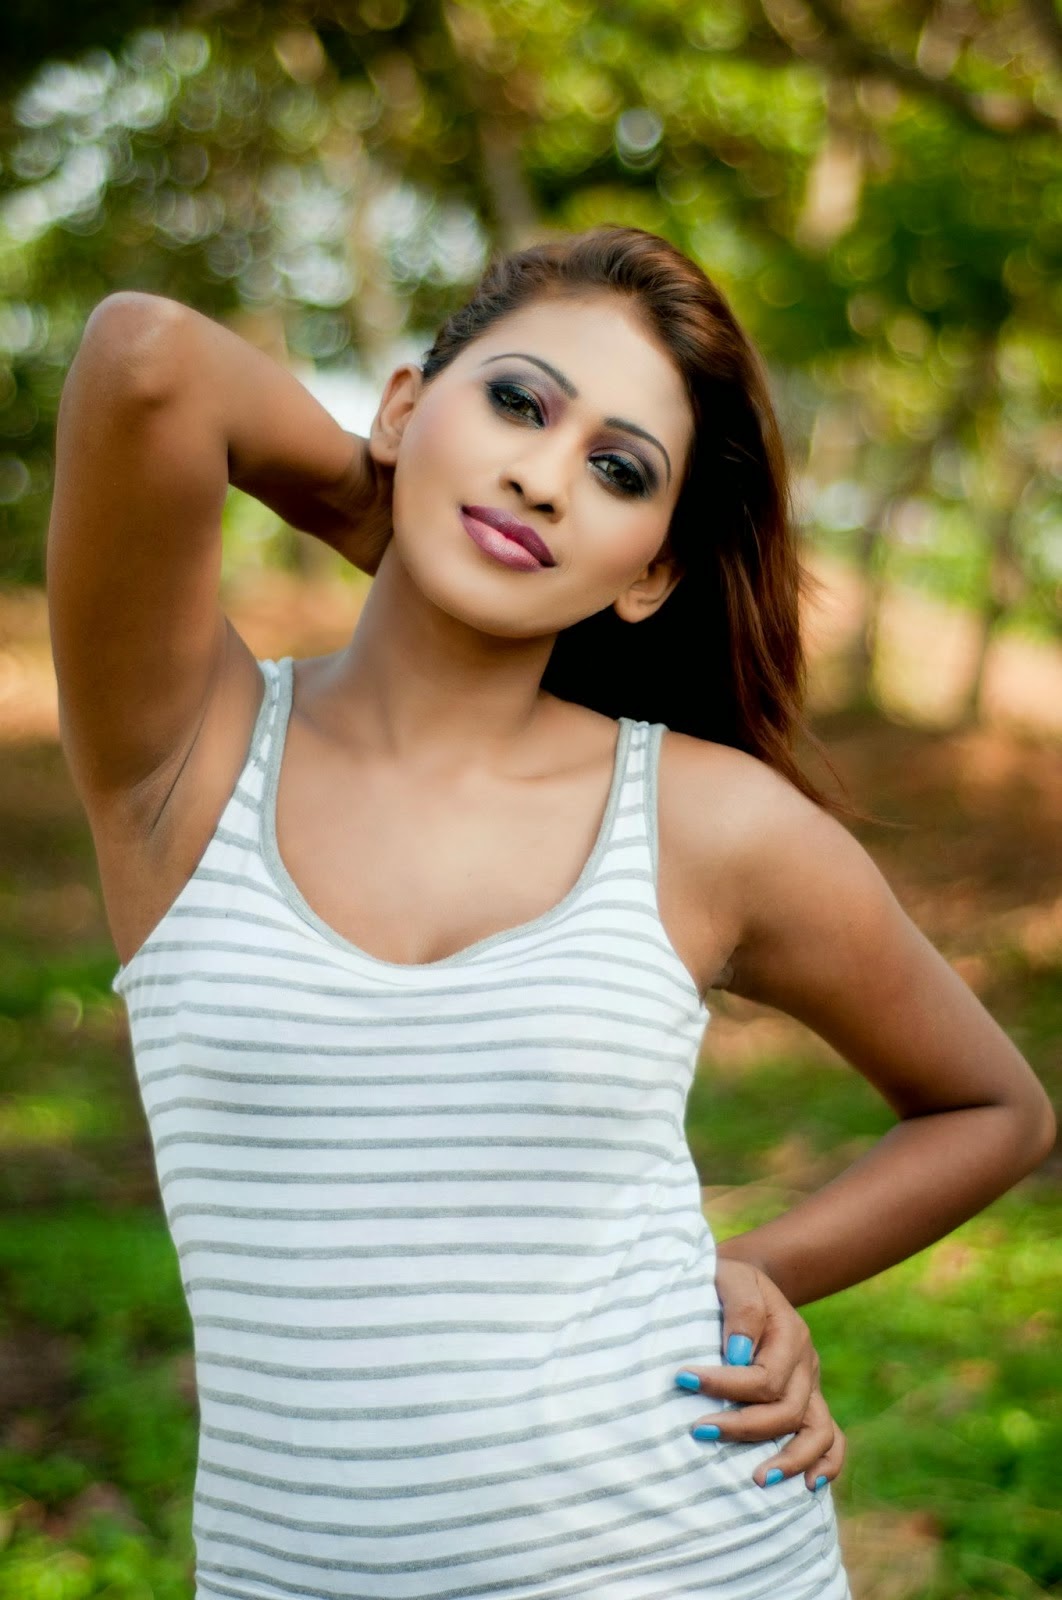 Piumi Hansamali 7. Hot Sri Lankan fashion Model Piumi Hansamali. 